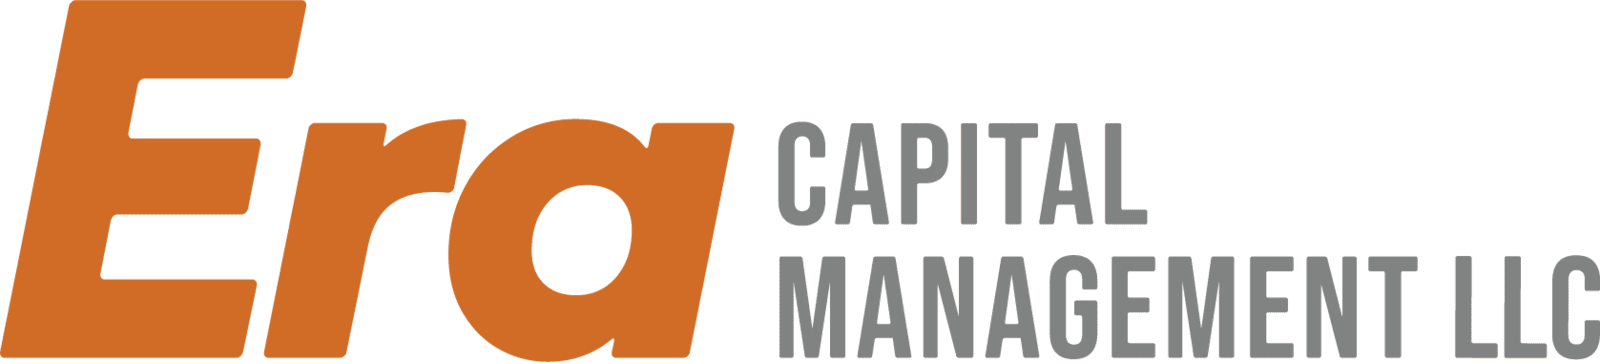 Era Capital Management LLC